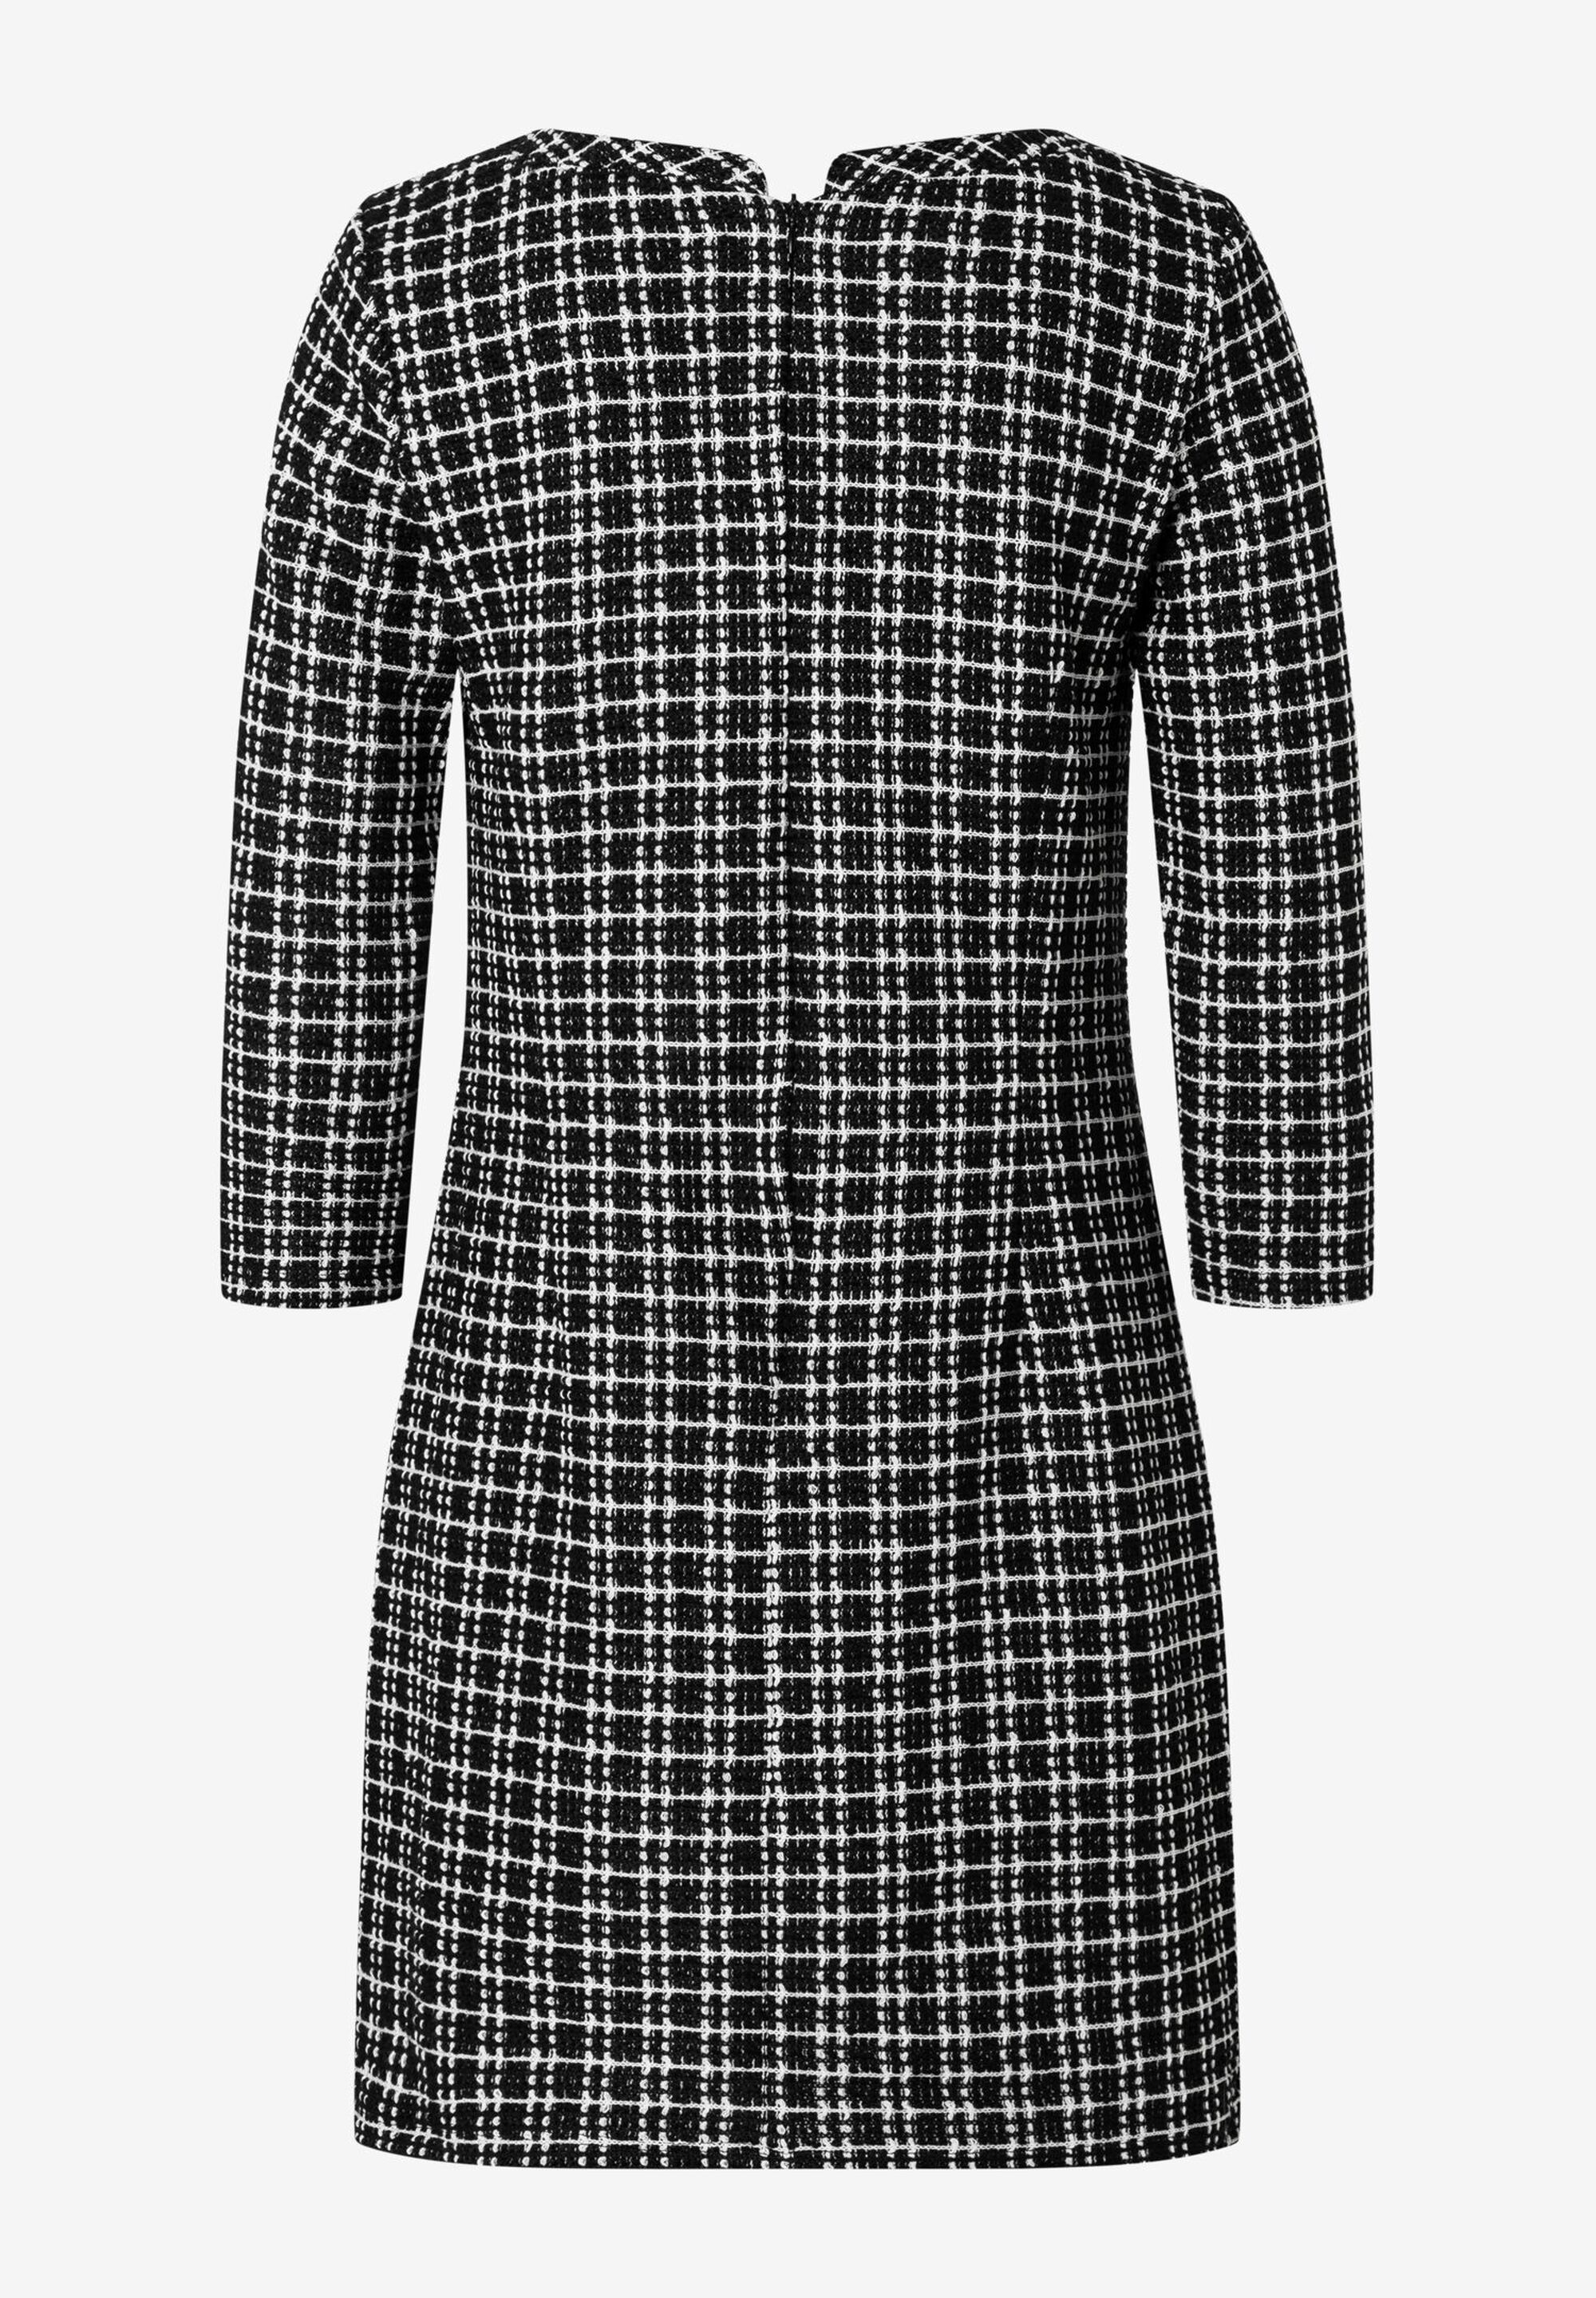 Jerseykleid, schwarz/weiß kariert, Winter-Kollektion | Der offizielle MORE  & MORE Onlineshop